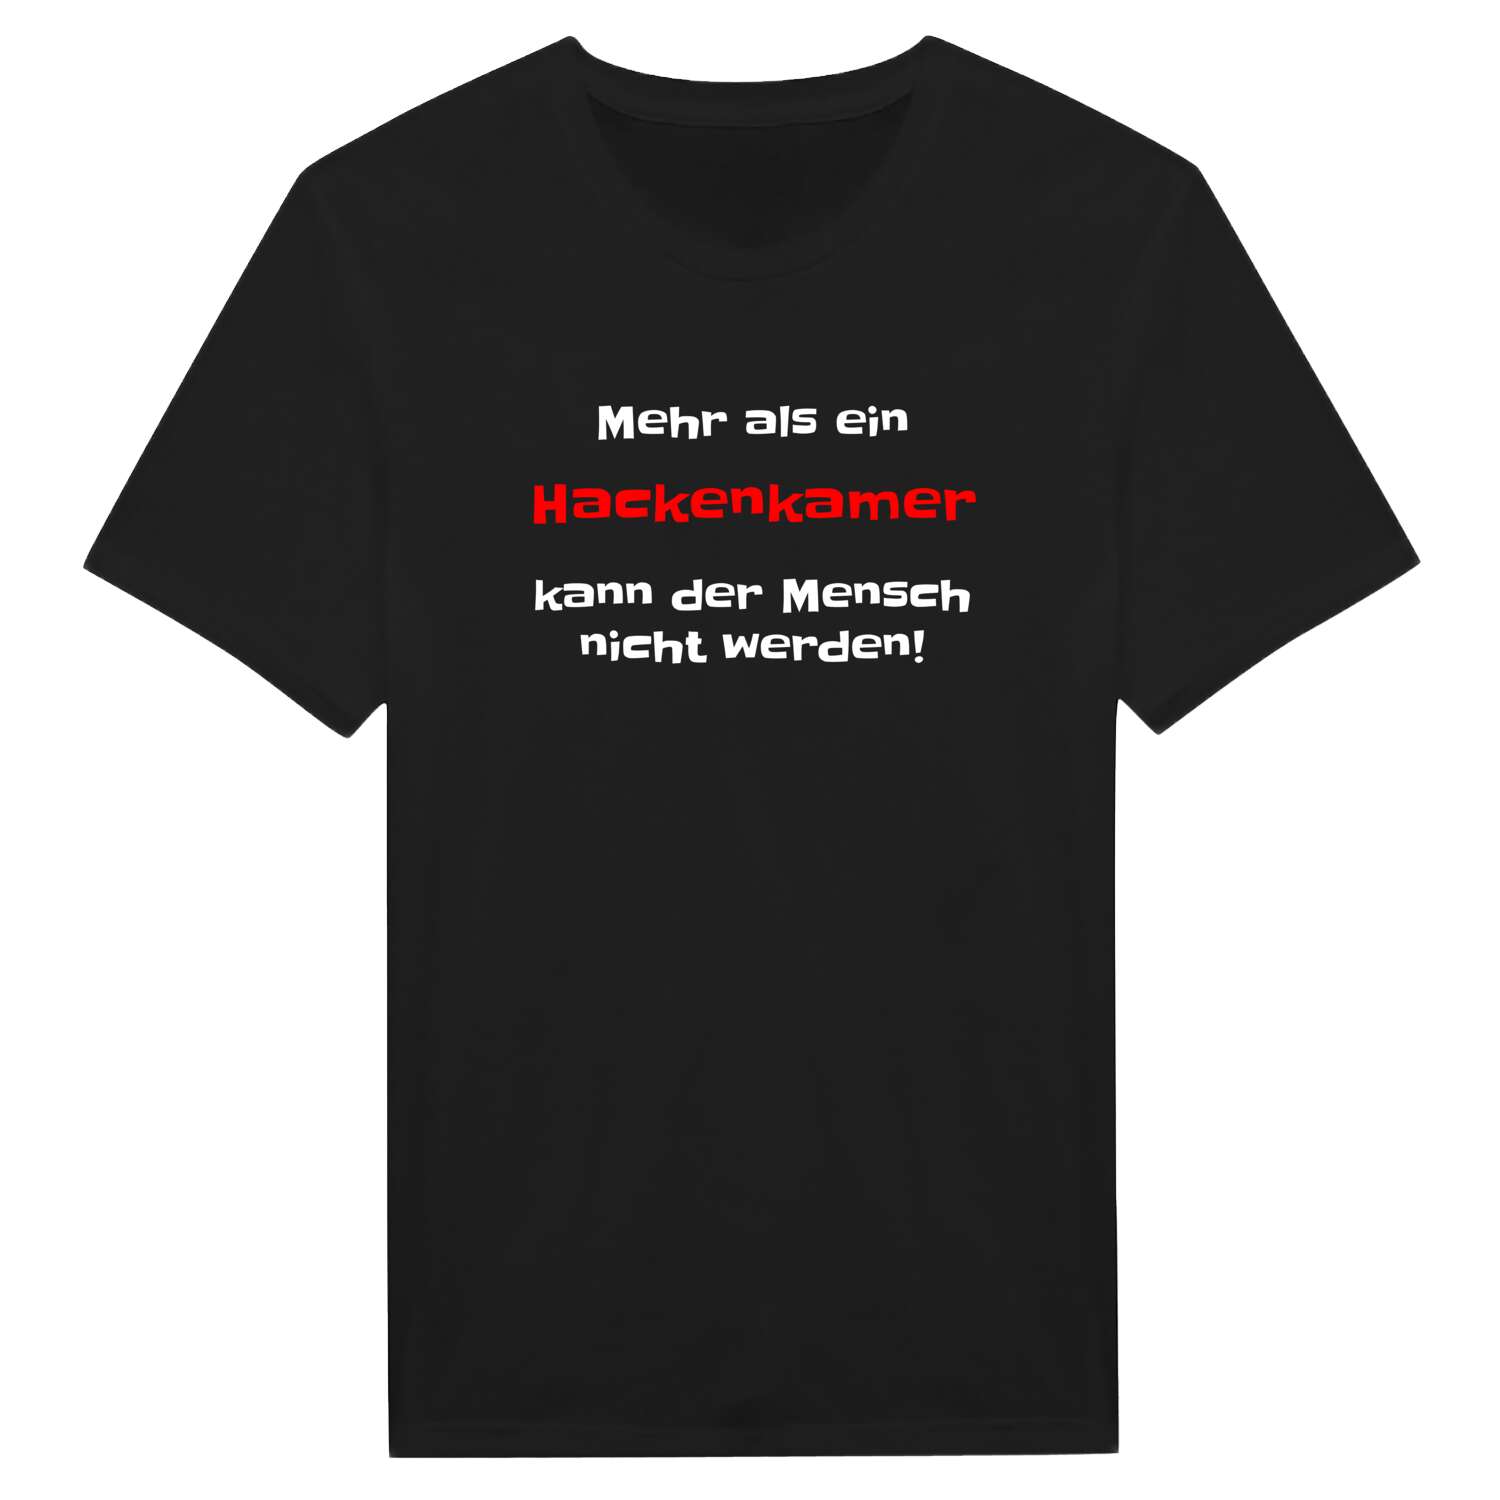 Hackenkam T-Shirt »Mehr als ein«